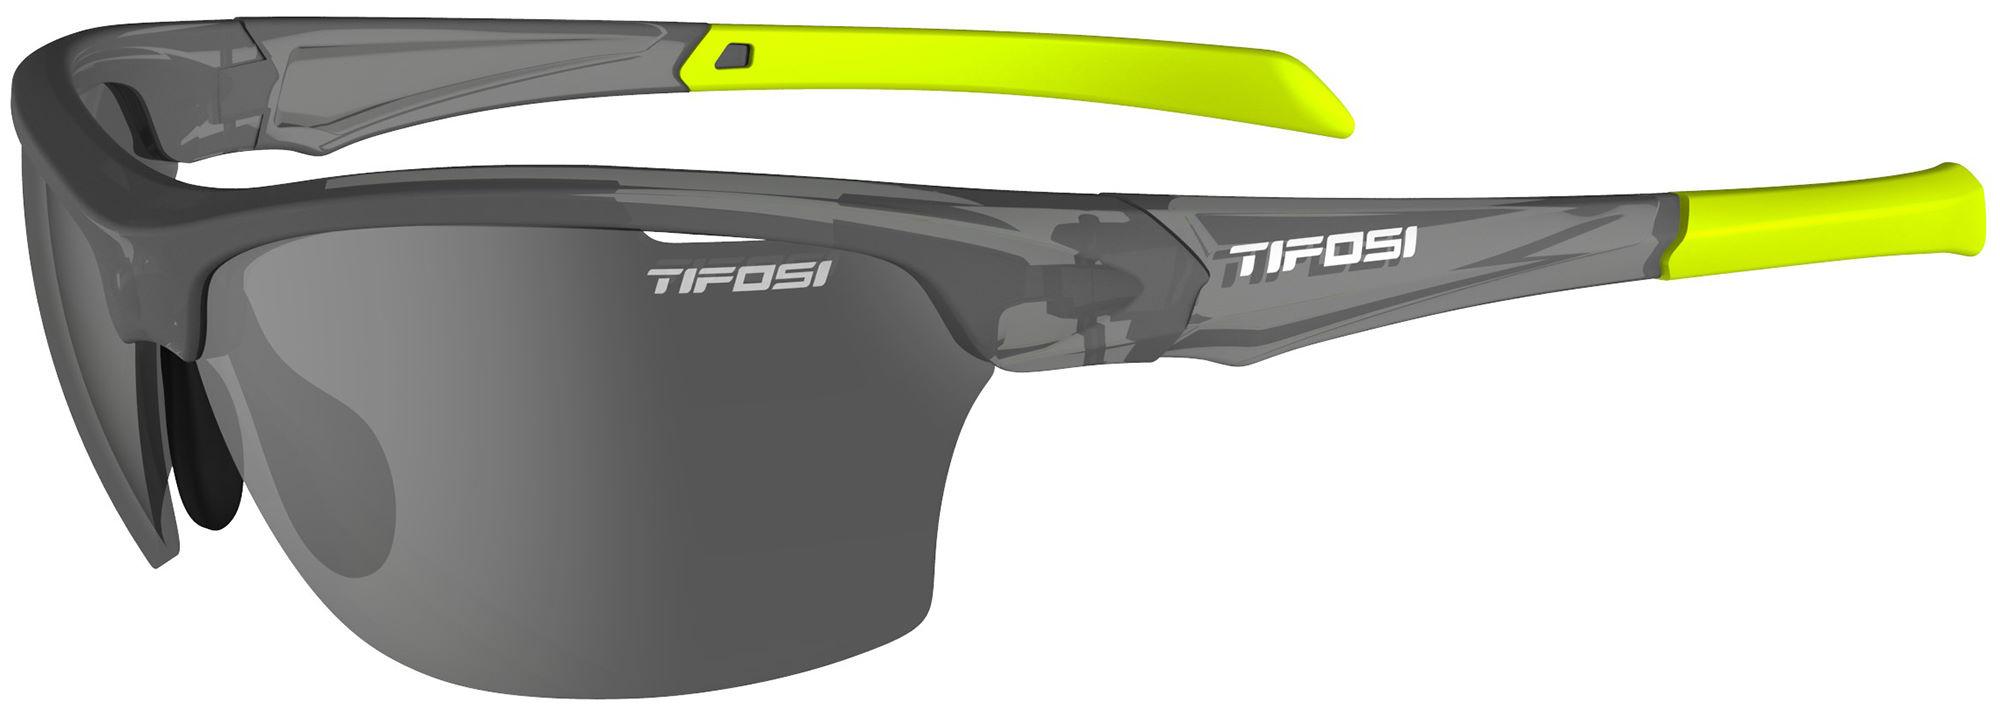 Tifosi Eyewear Intense Single Lens Sunglasses - Matte Smoke